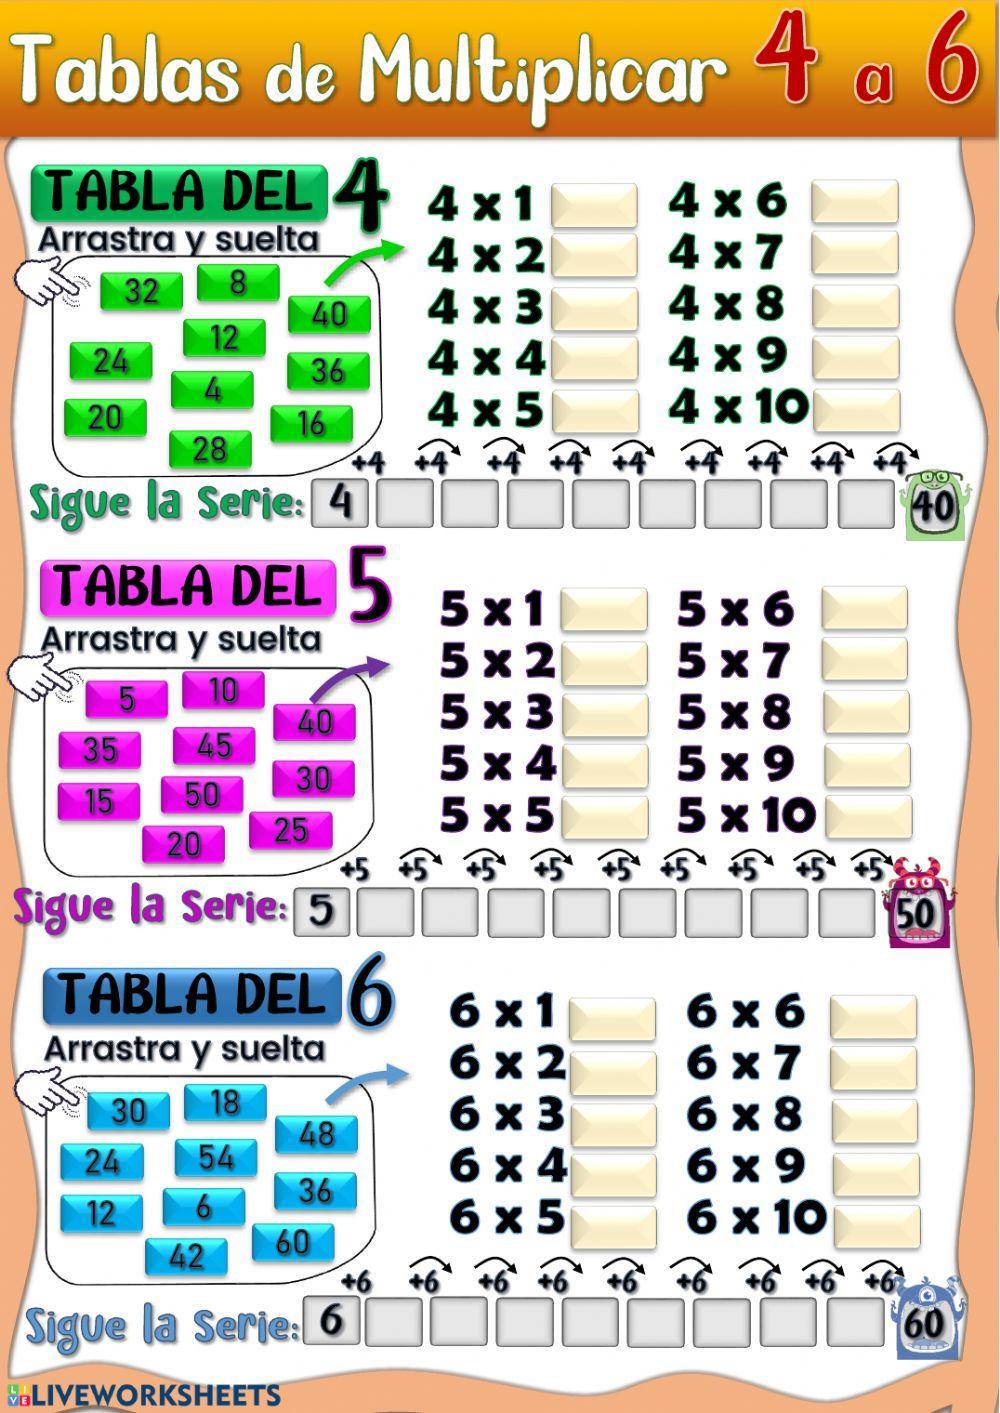 Tablas De Multiplicar 4 Tablas de Multiplicar del 4, 5 y 6. worksheet | Live Worksheets